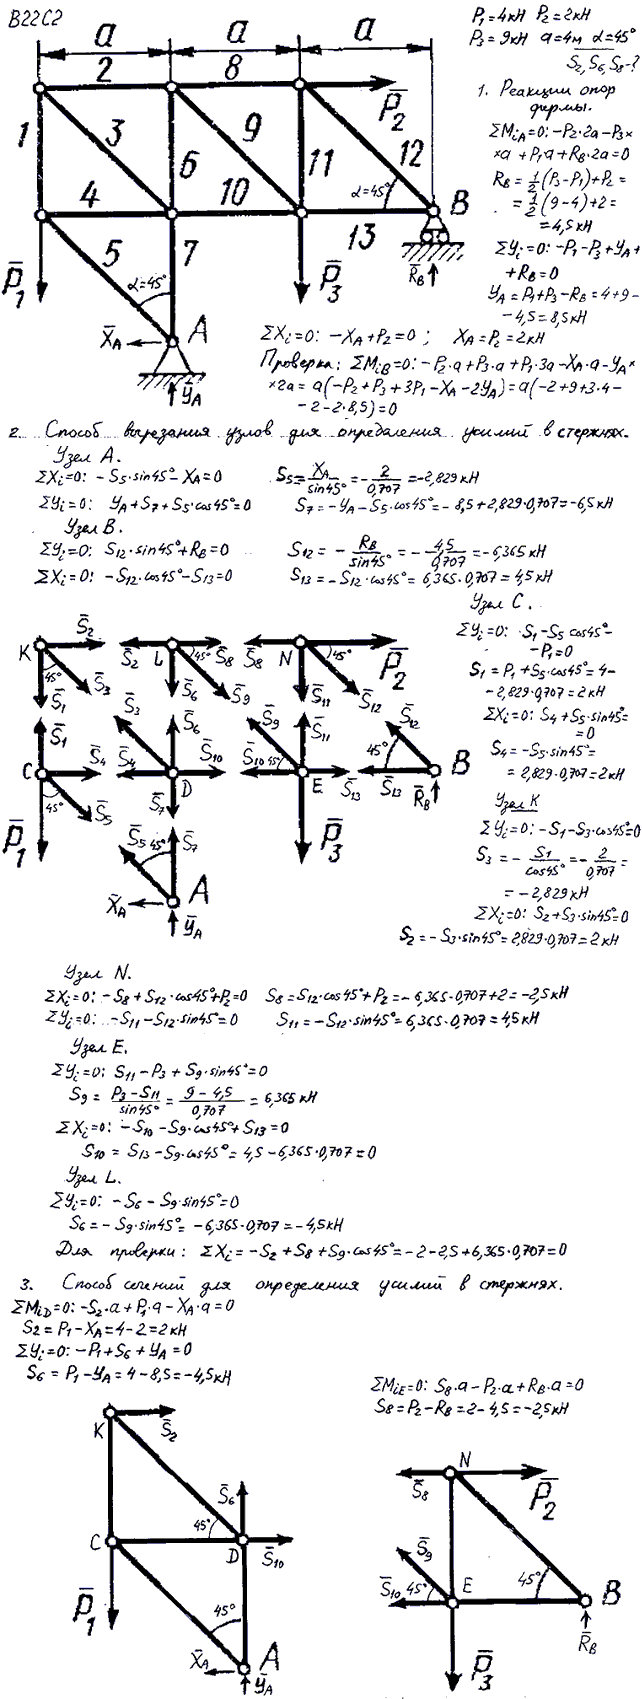 Задание C2 вариант 22. P1=4 кН, P2=2 кН, P3=9 кН, a=4 м, α=45 град, номер стержня 2, 6, 8.